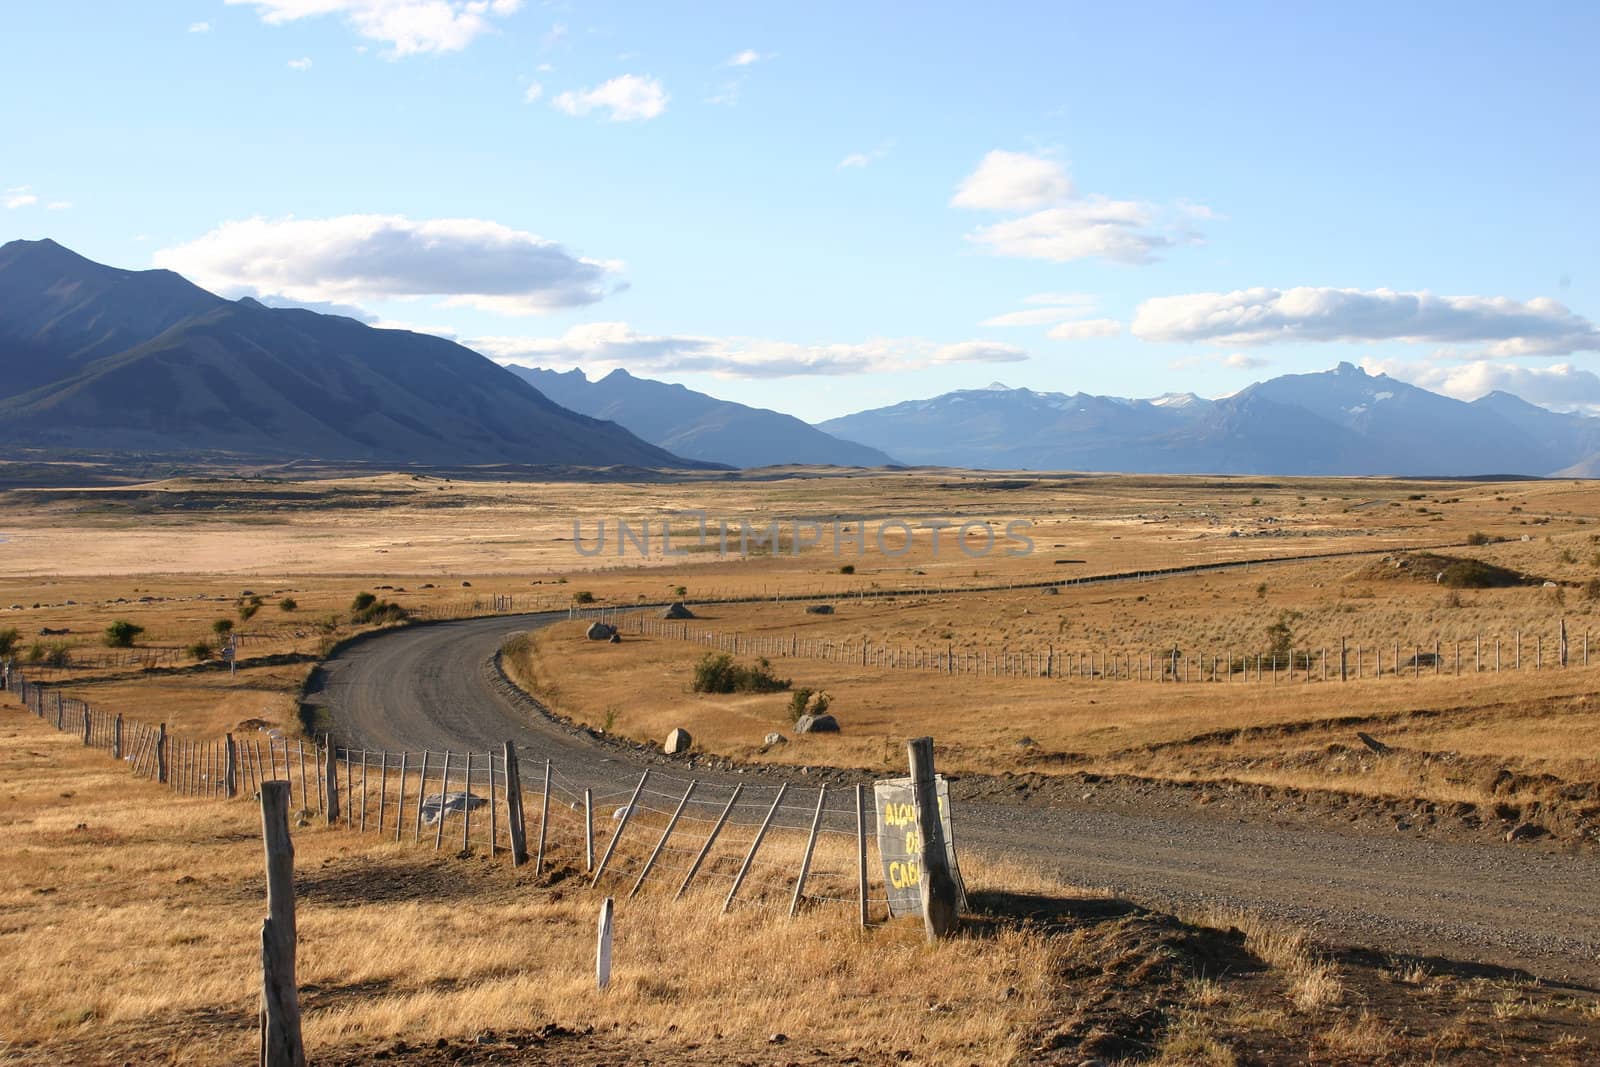 Landscape in patagonia close to El Calafate - perito moreno